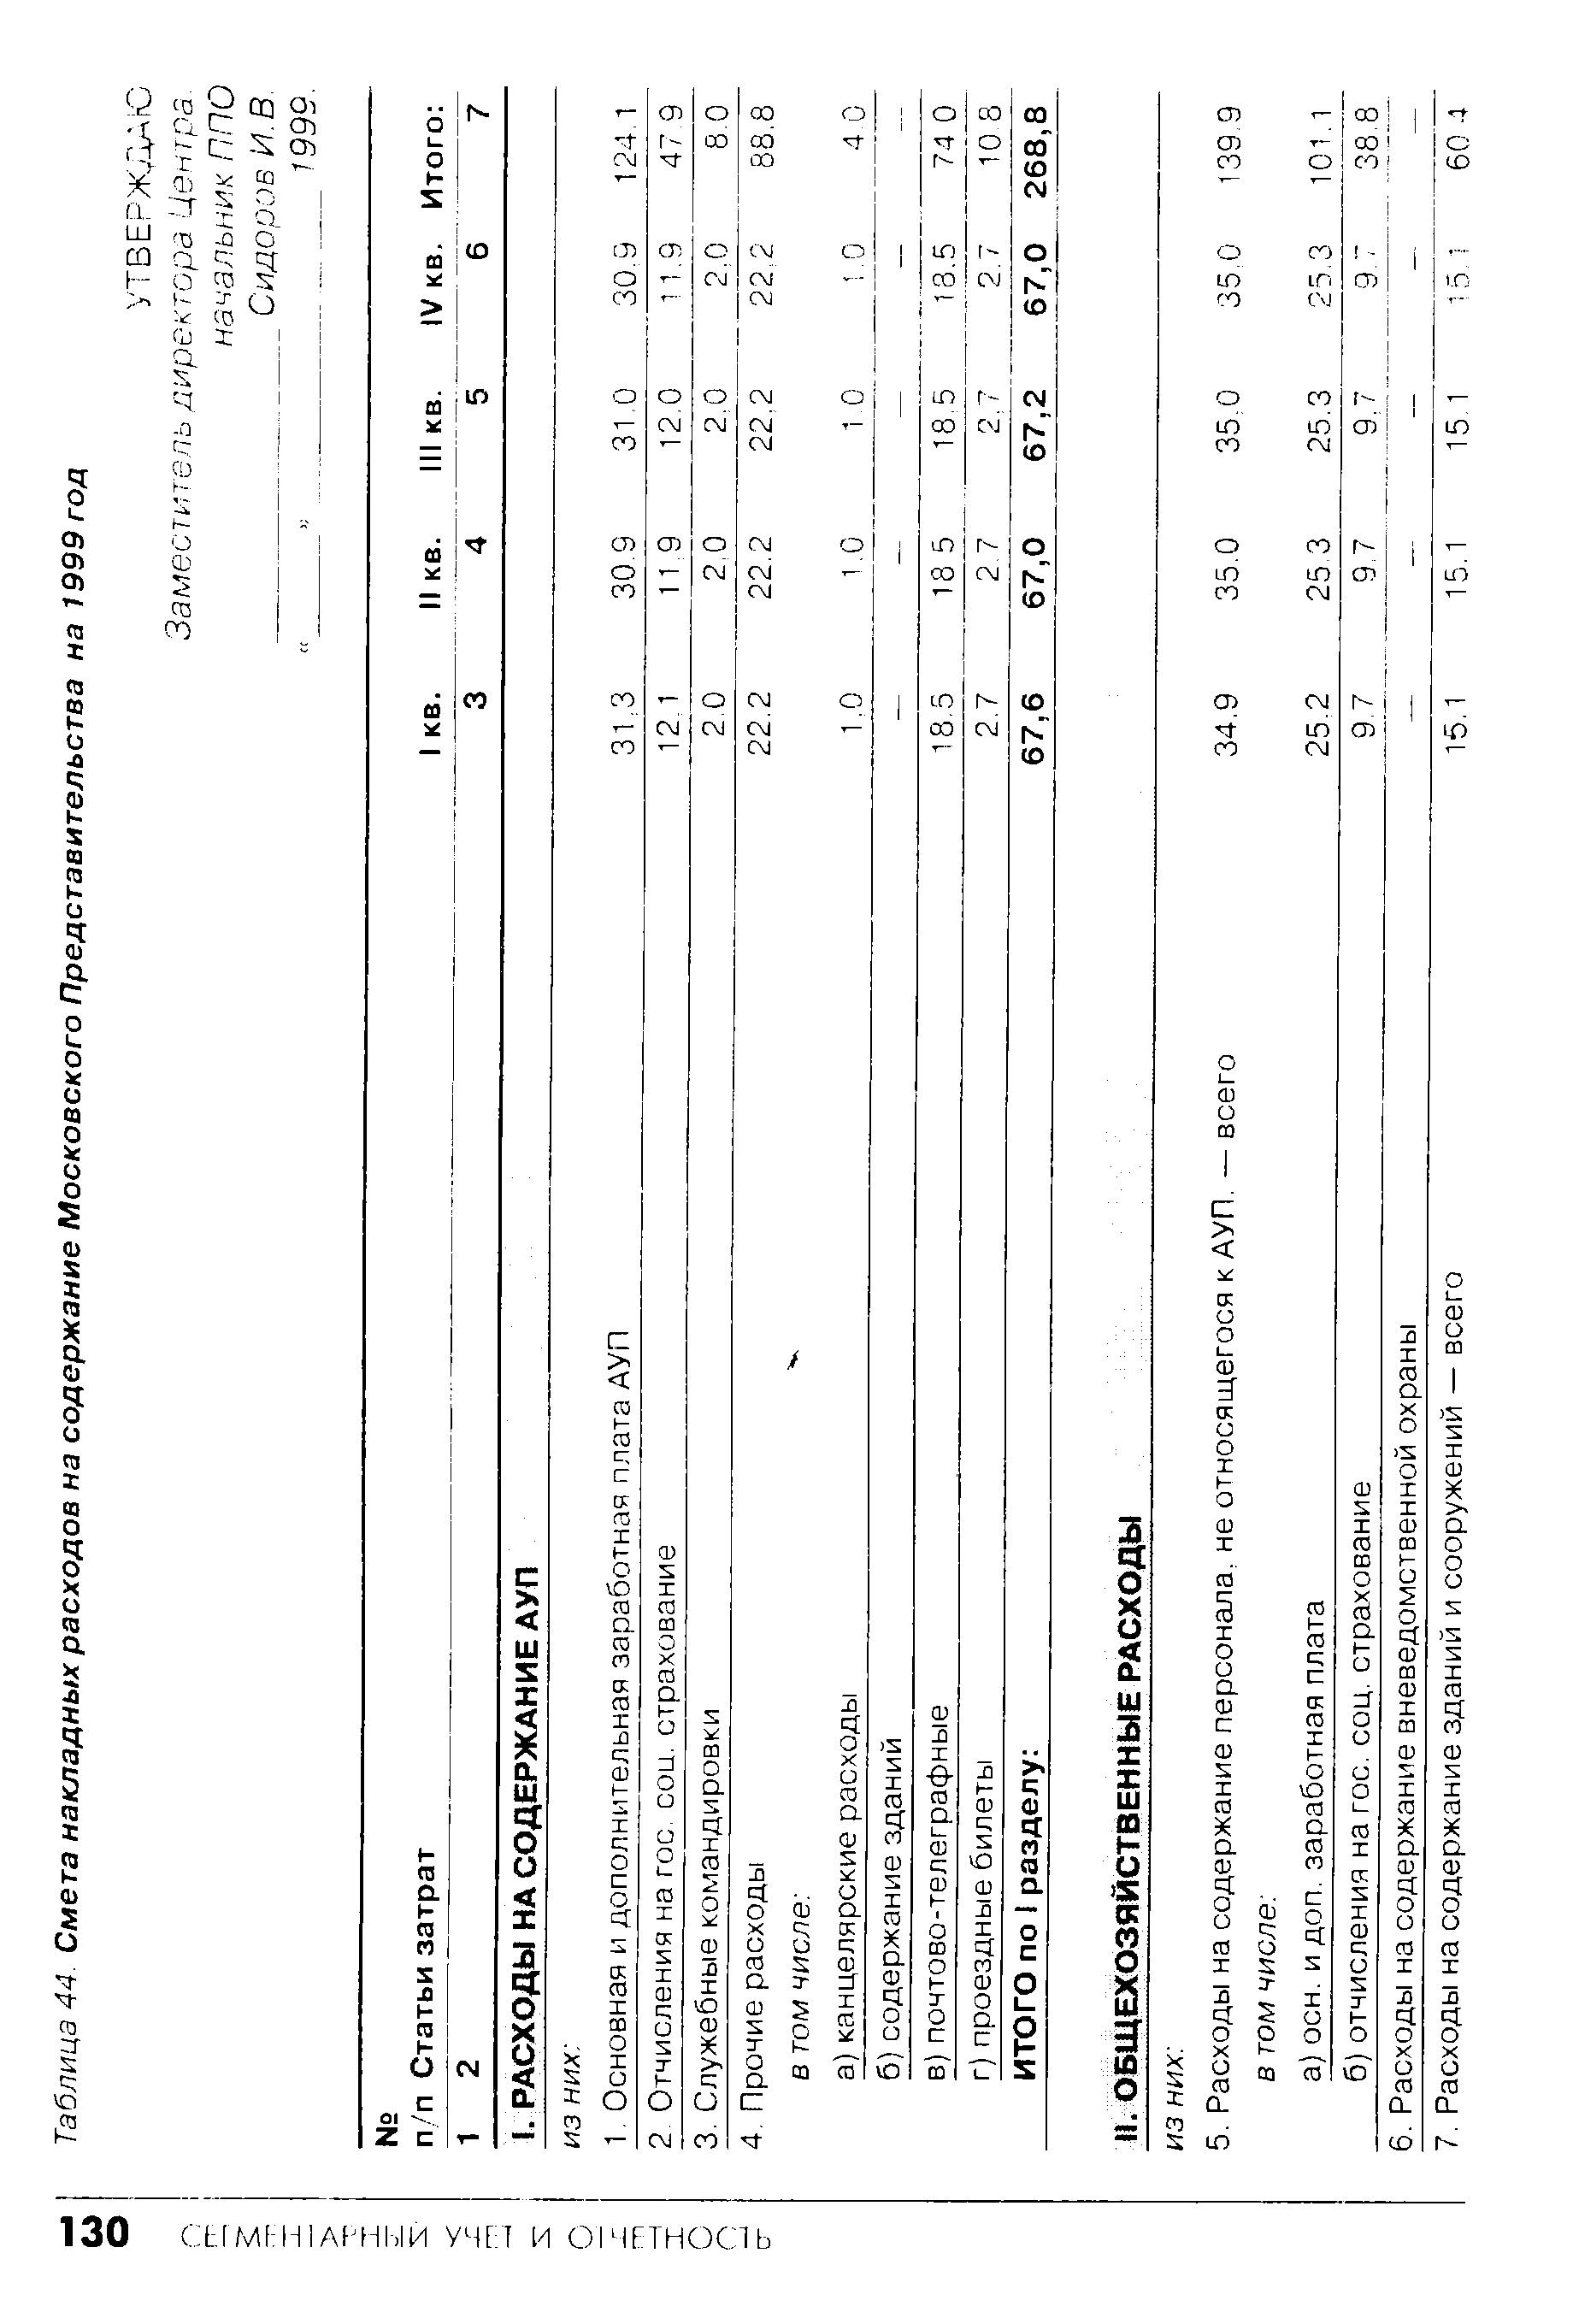 Таблица 44. Смета накладных расходов на содержание Московского Представительства на 1999 год
